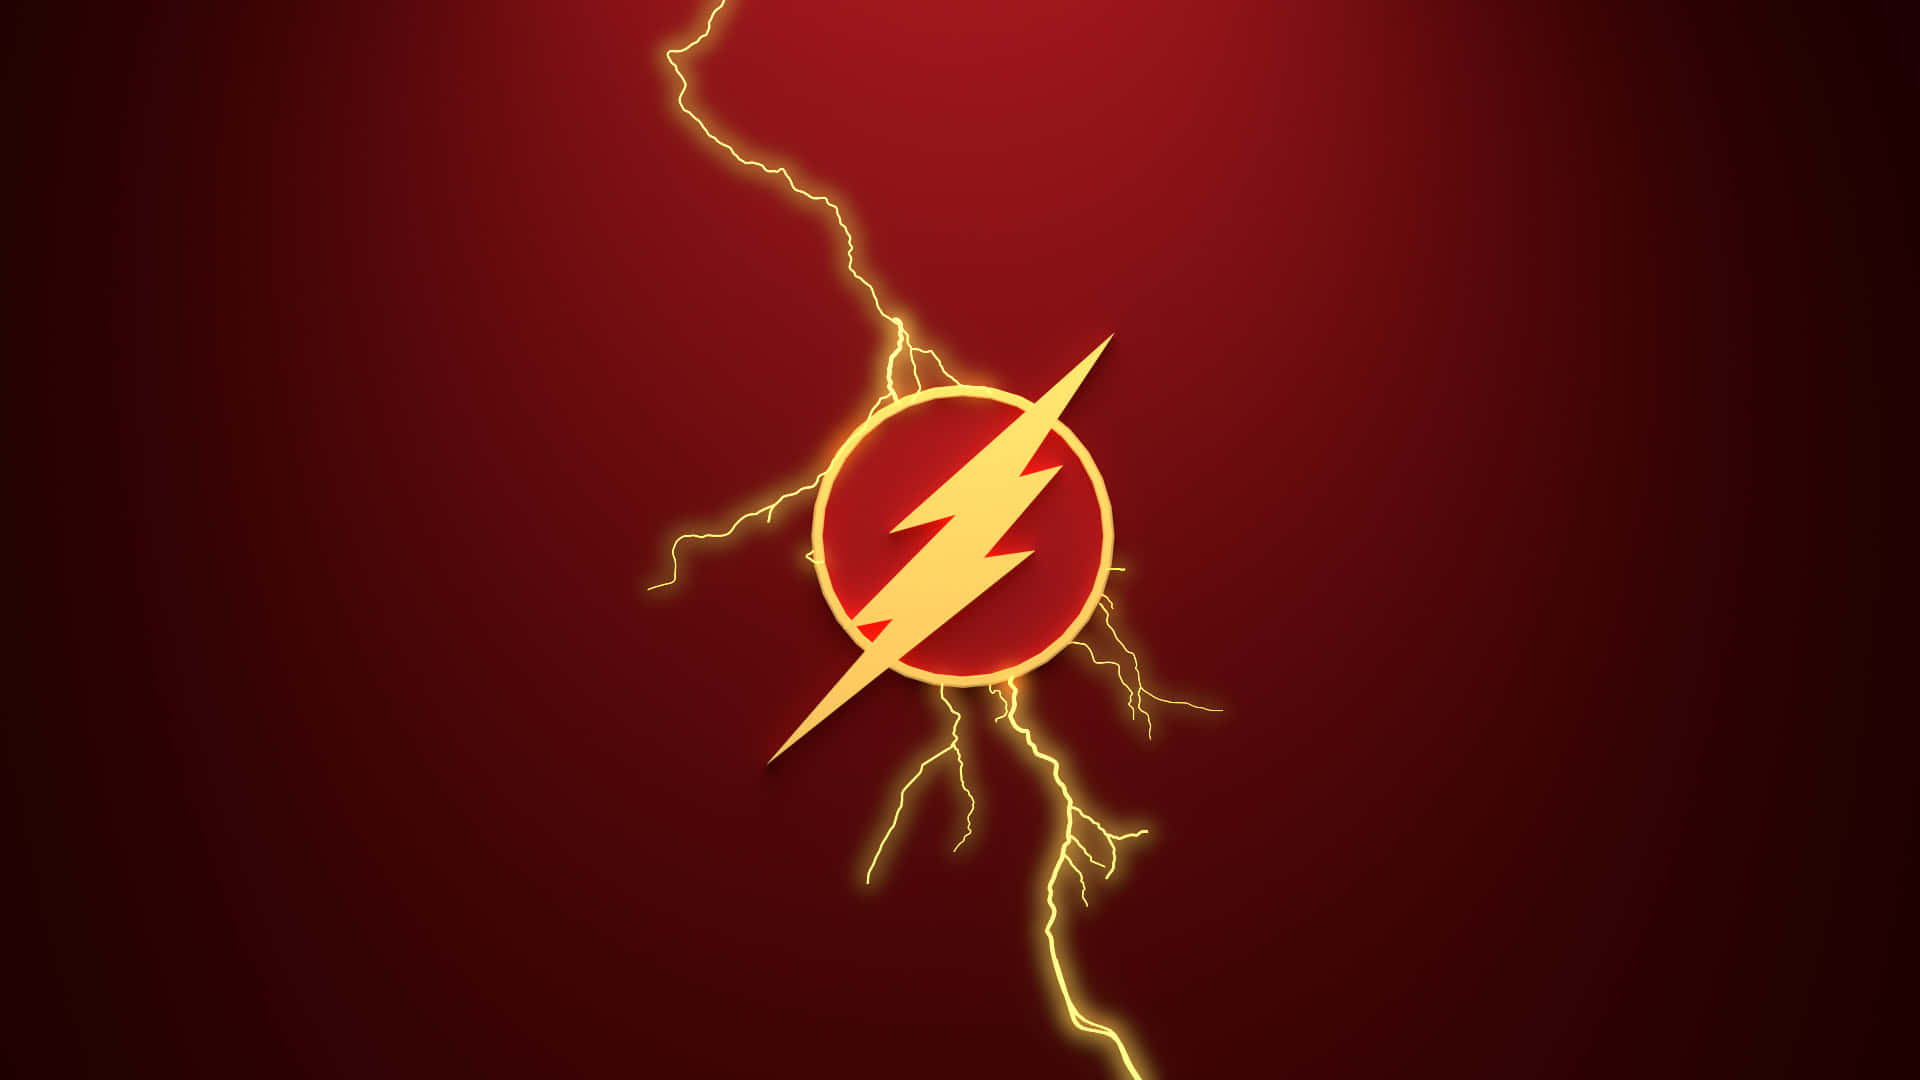 Barryallen, Der Løber Med The Flash's Overmenneskelige Hastighed.